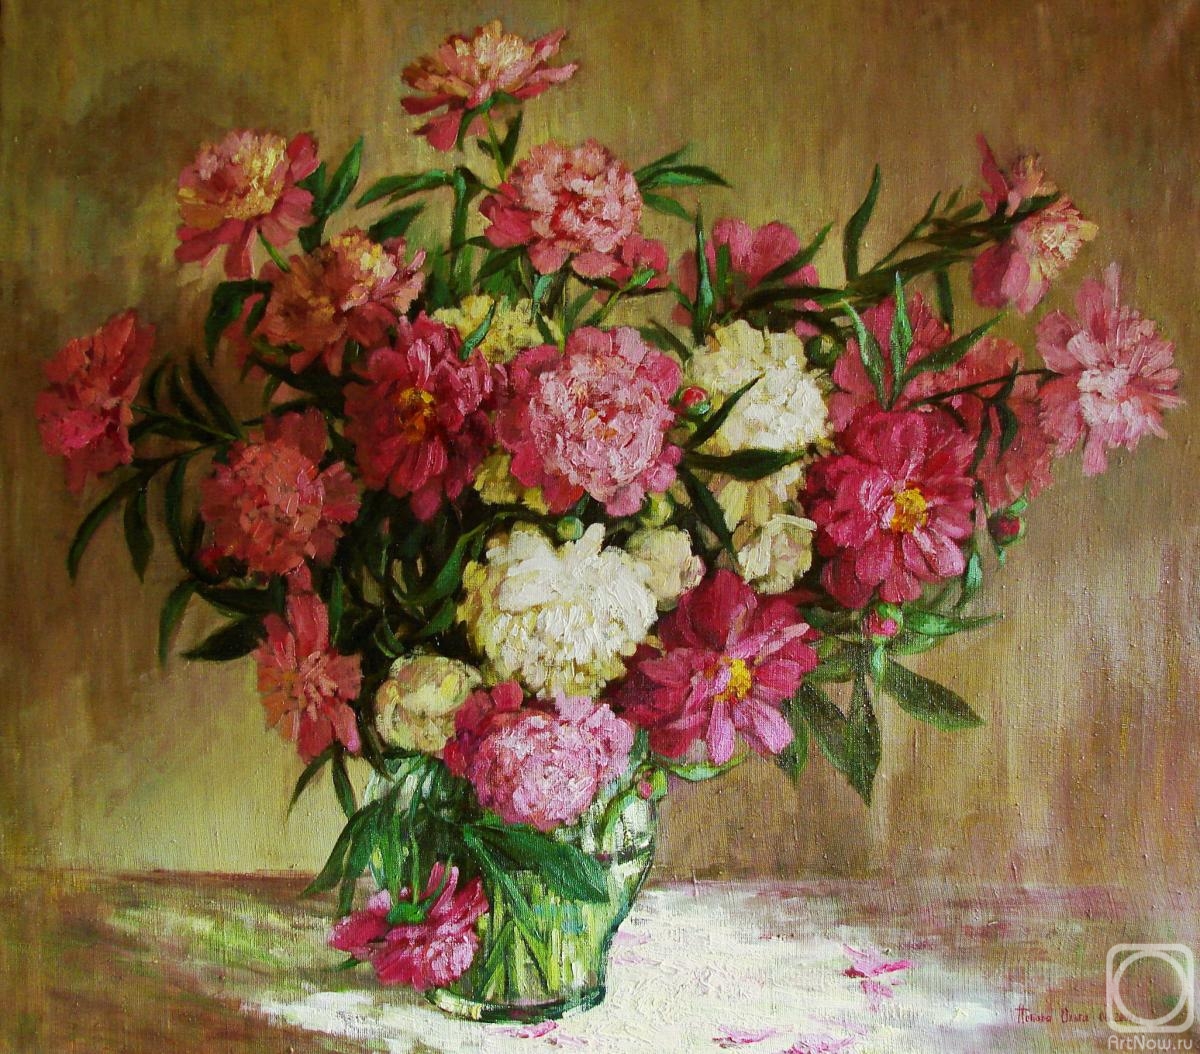 Sedyh Olga. Bouquet of peonies